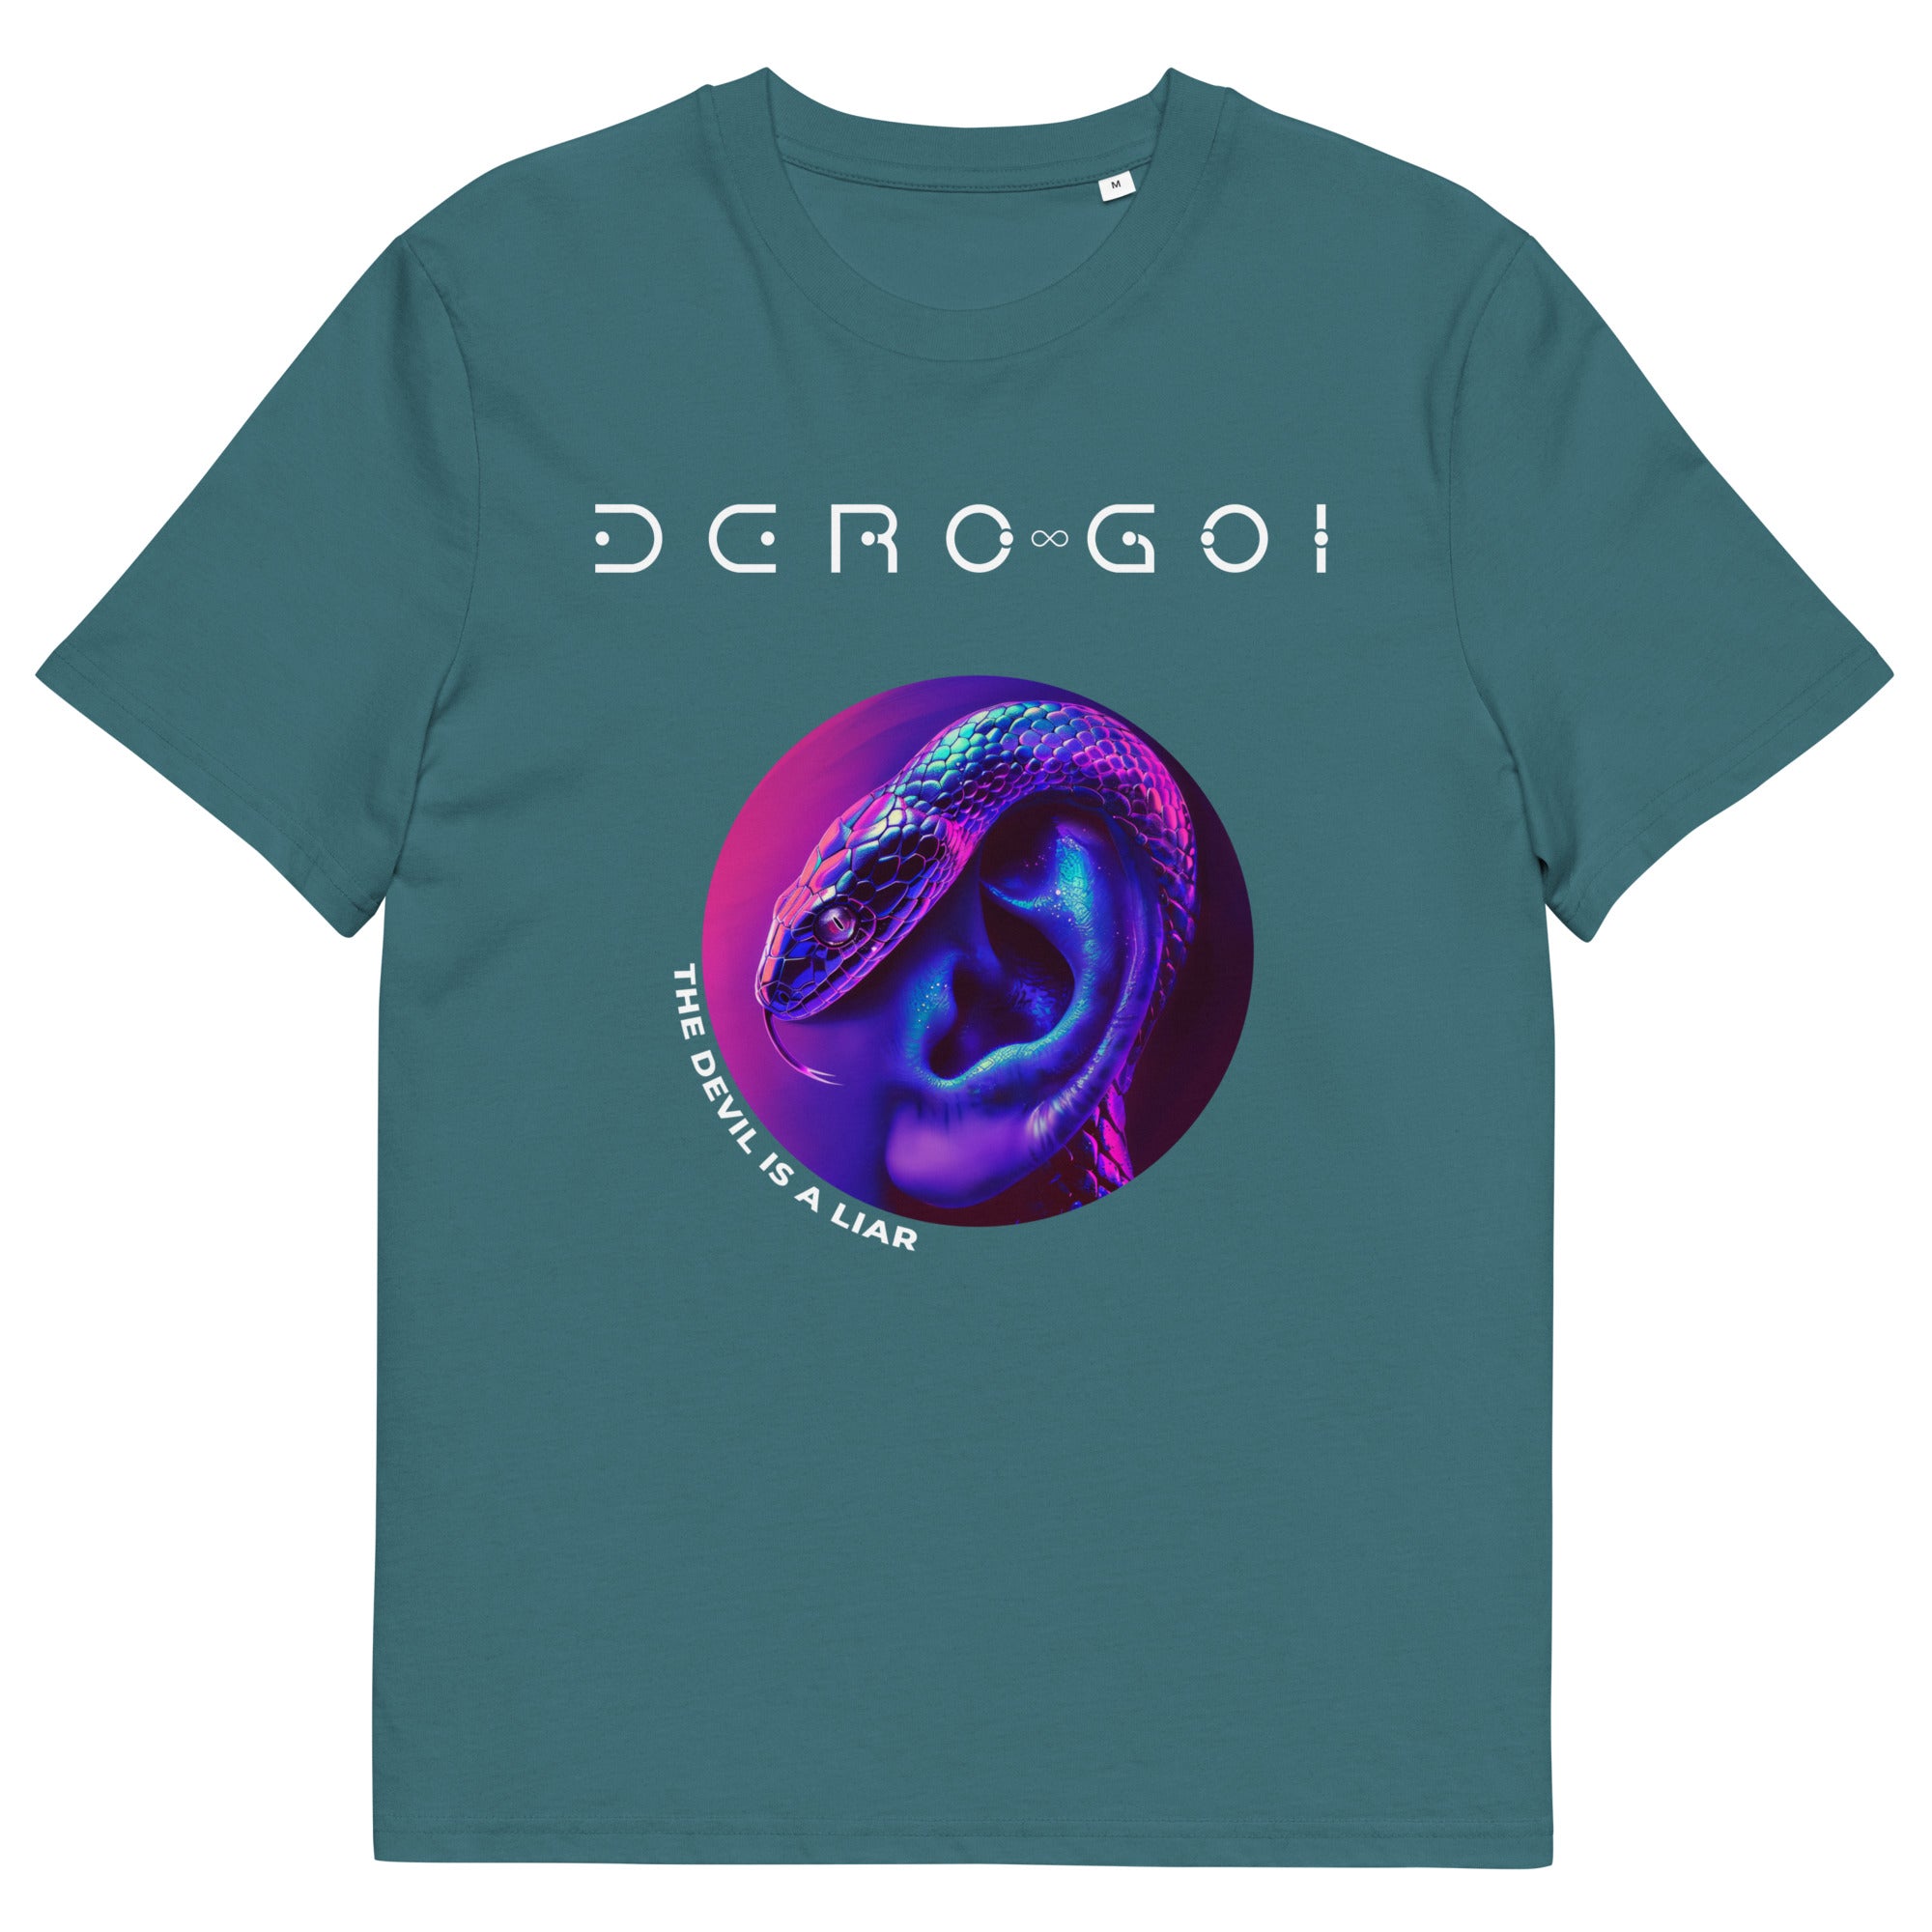 DERO GOI - The Devil is a Liar - Unisex organic cotton t-shirt